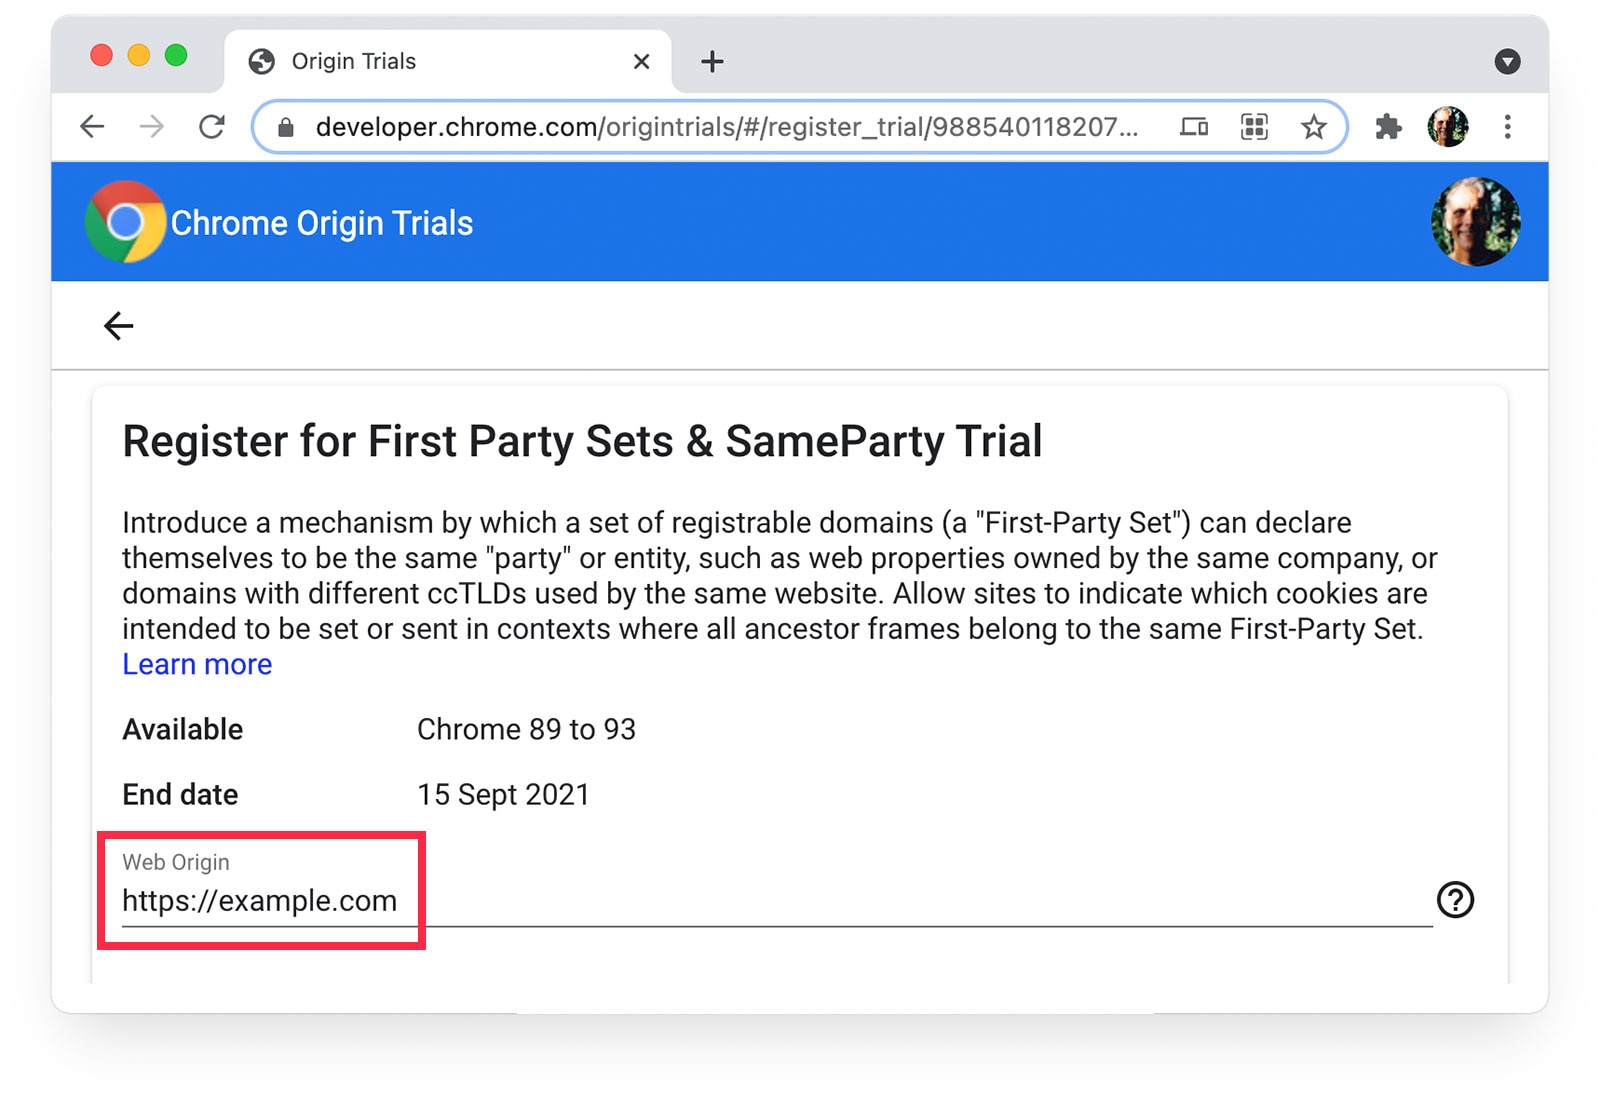 Chrome ऑरिजिन ट्रायल 
ऐसा पेज जो https://example.com को वेब ऑरिजिन के तौर पर चुना गया है.